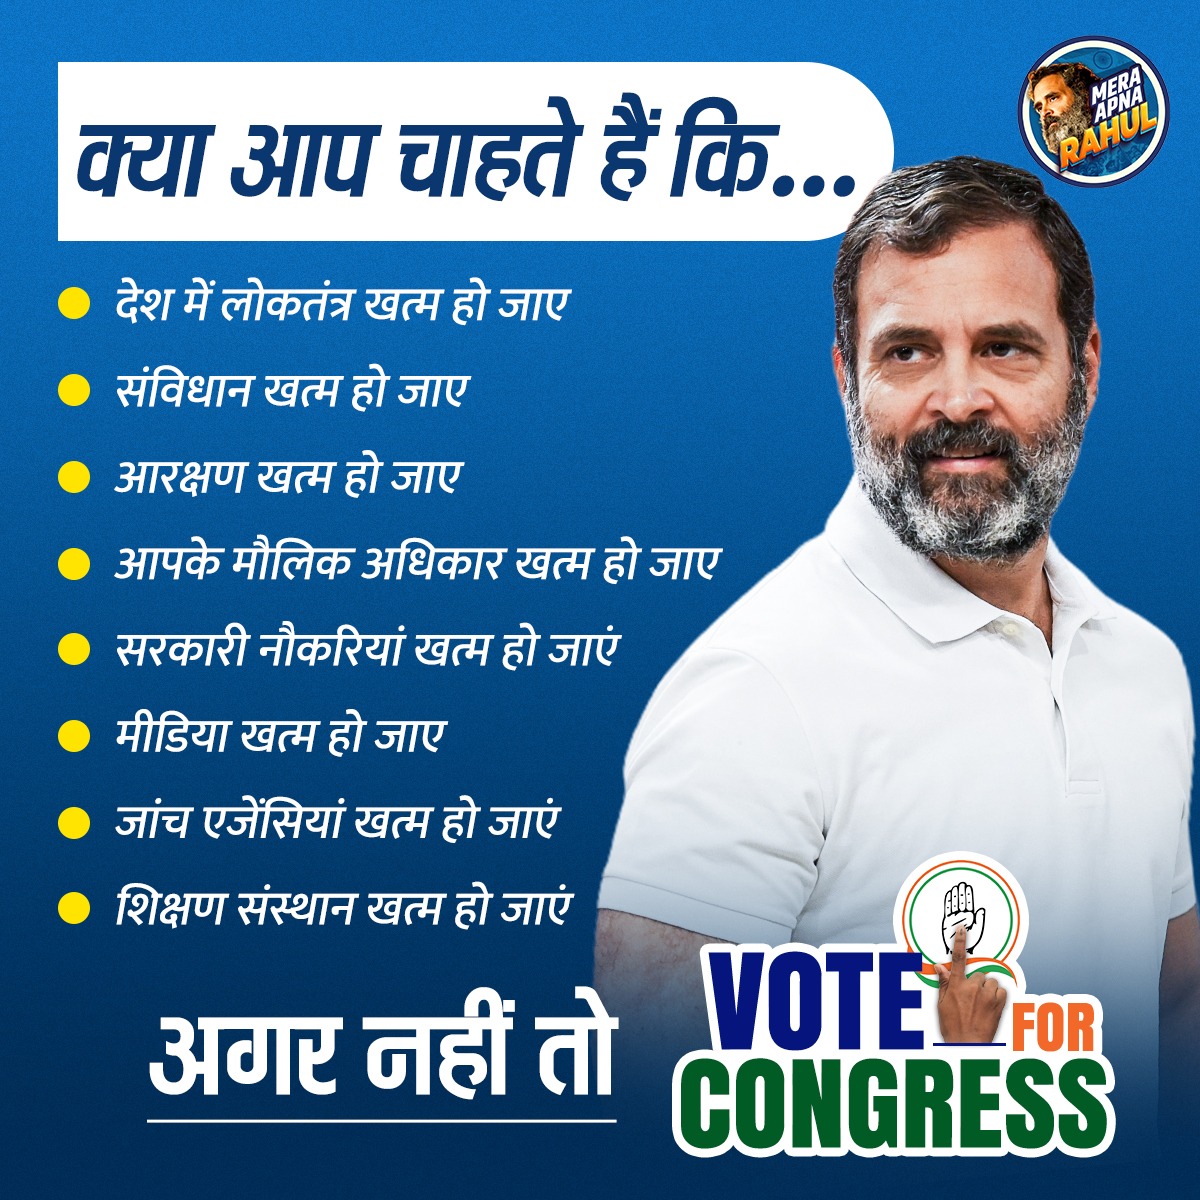 ये चुनाव 'करो या मरो' का चुनाव है |
इस बार अगर गलती हुई _सब खत्म हो जाएगा |
इसलिए इस बार आप तय कीजिए _आपको क्या चाहिए ?
आप क्या चाहते हैं ?-
.
.
.
.
#meraapnarahul
#VoteForCongress
#Congress6Guarantees
#GandhiHaiToGuaranteeHai